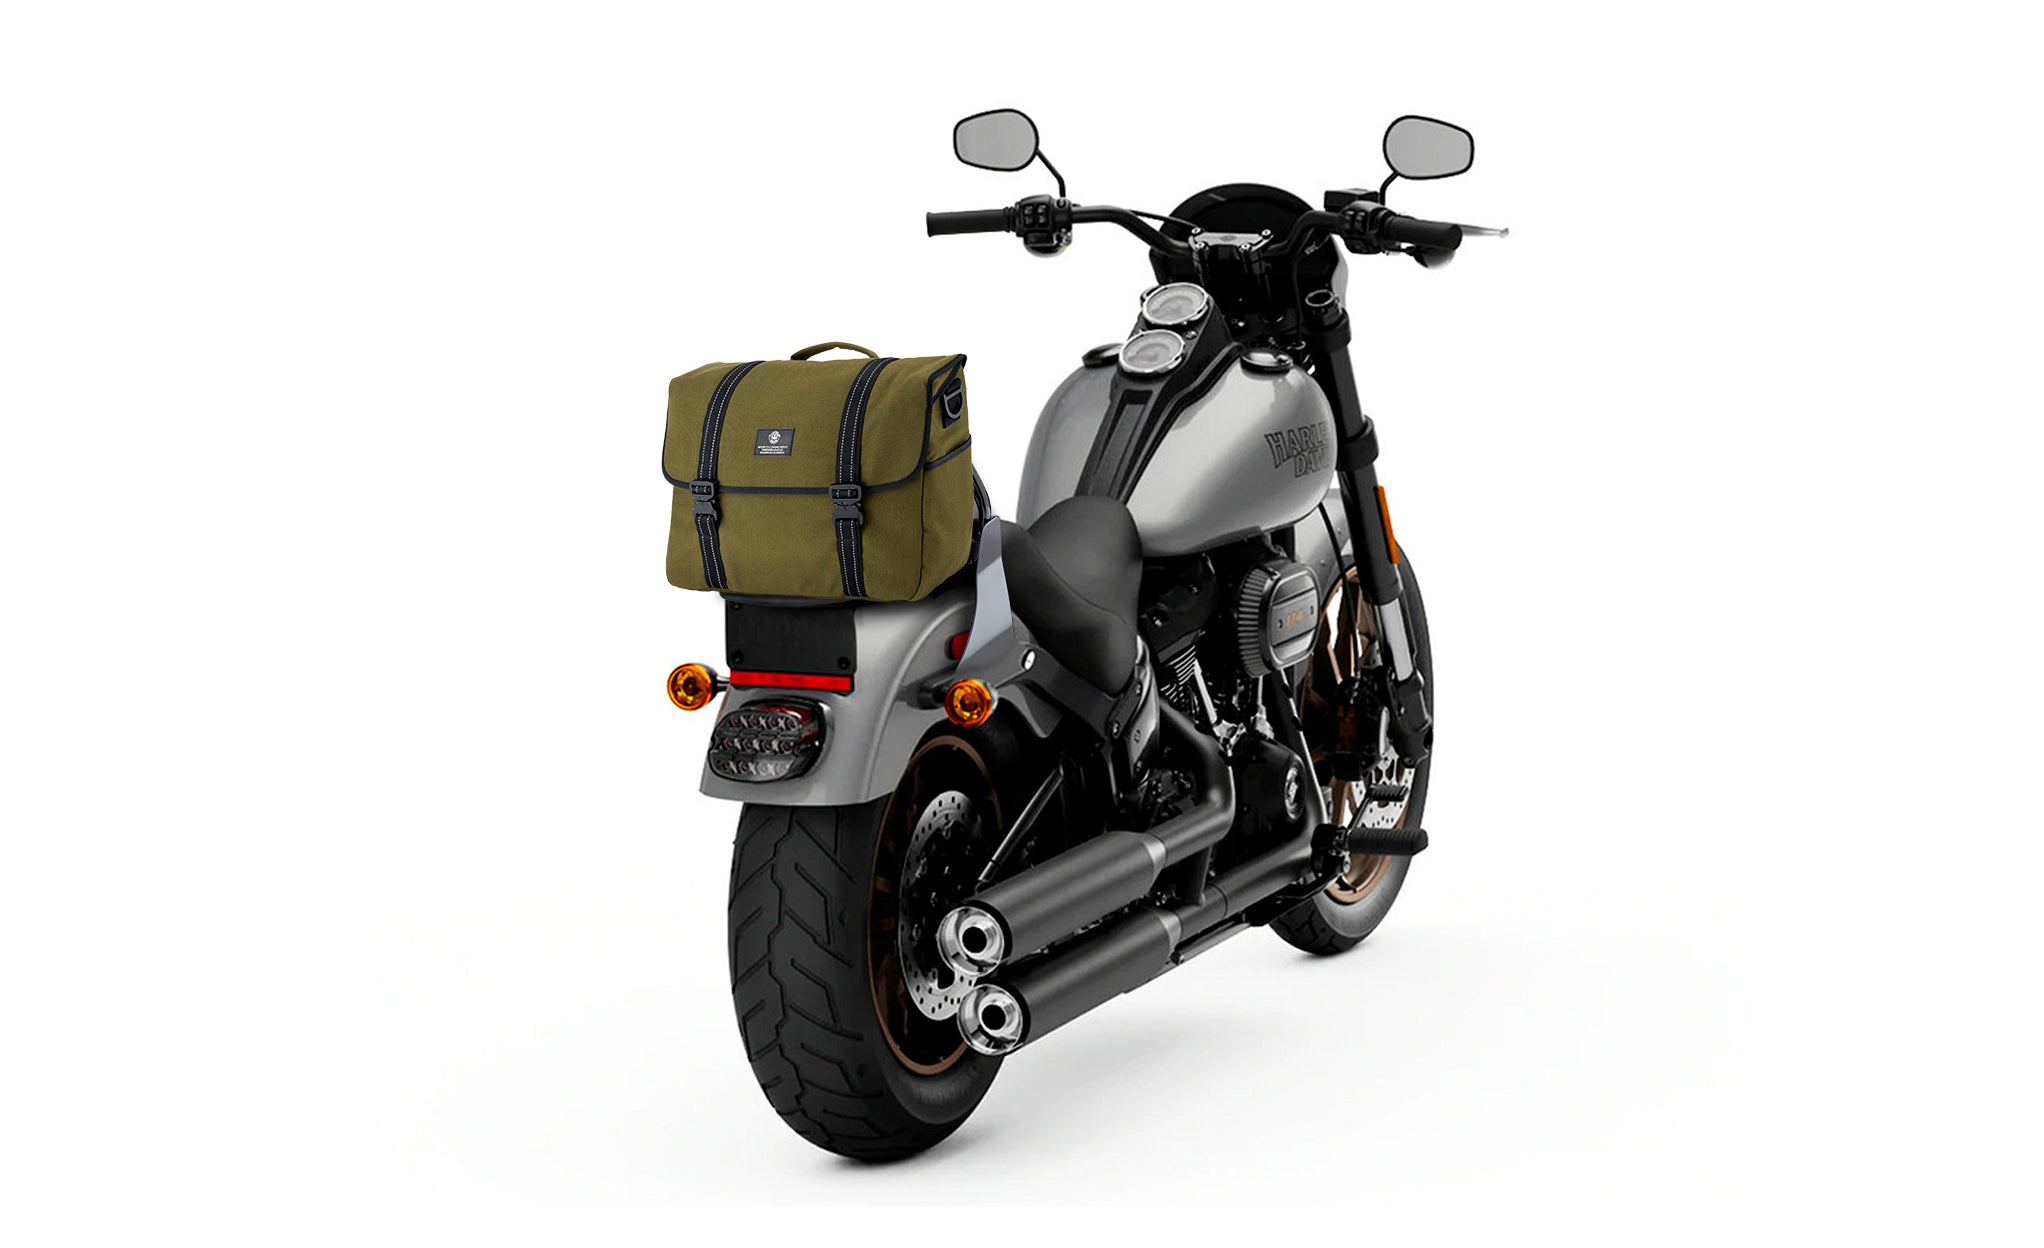 Viking Duo-tone Medium Hyosung Motorcycle Messenger Bag Green/Black Bag on Bike View @expand